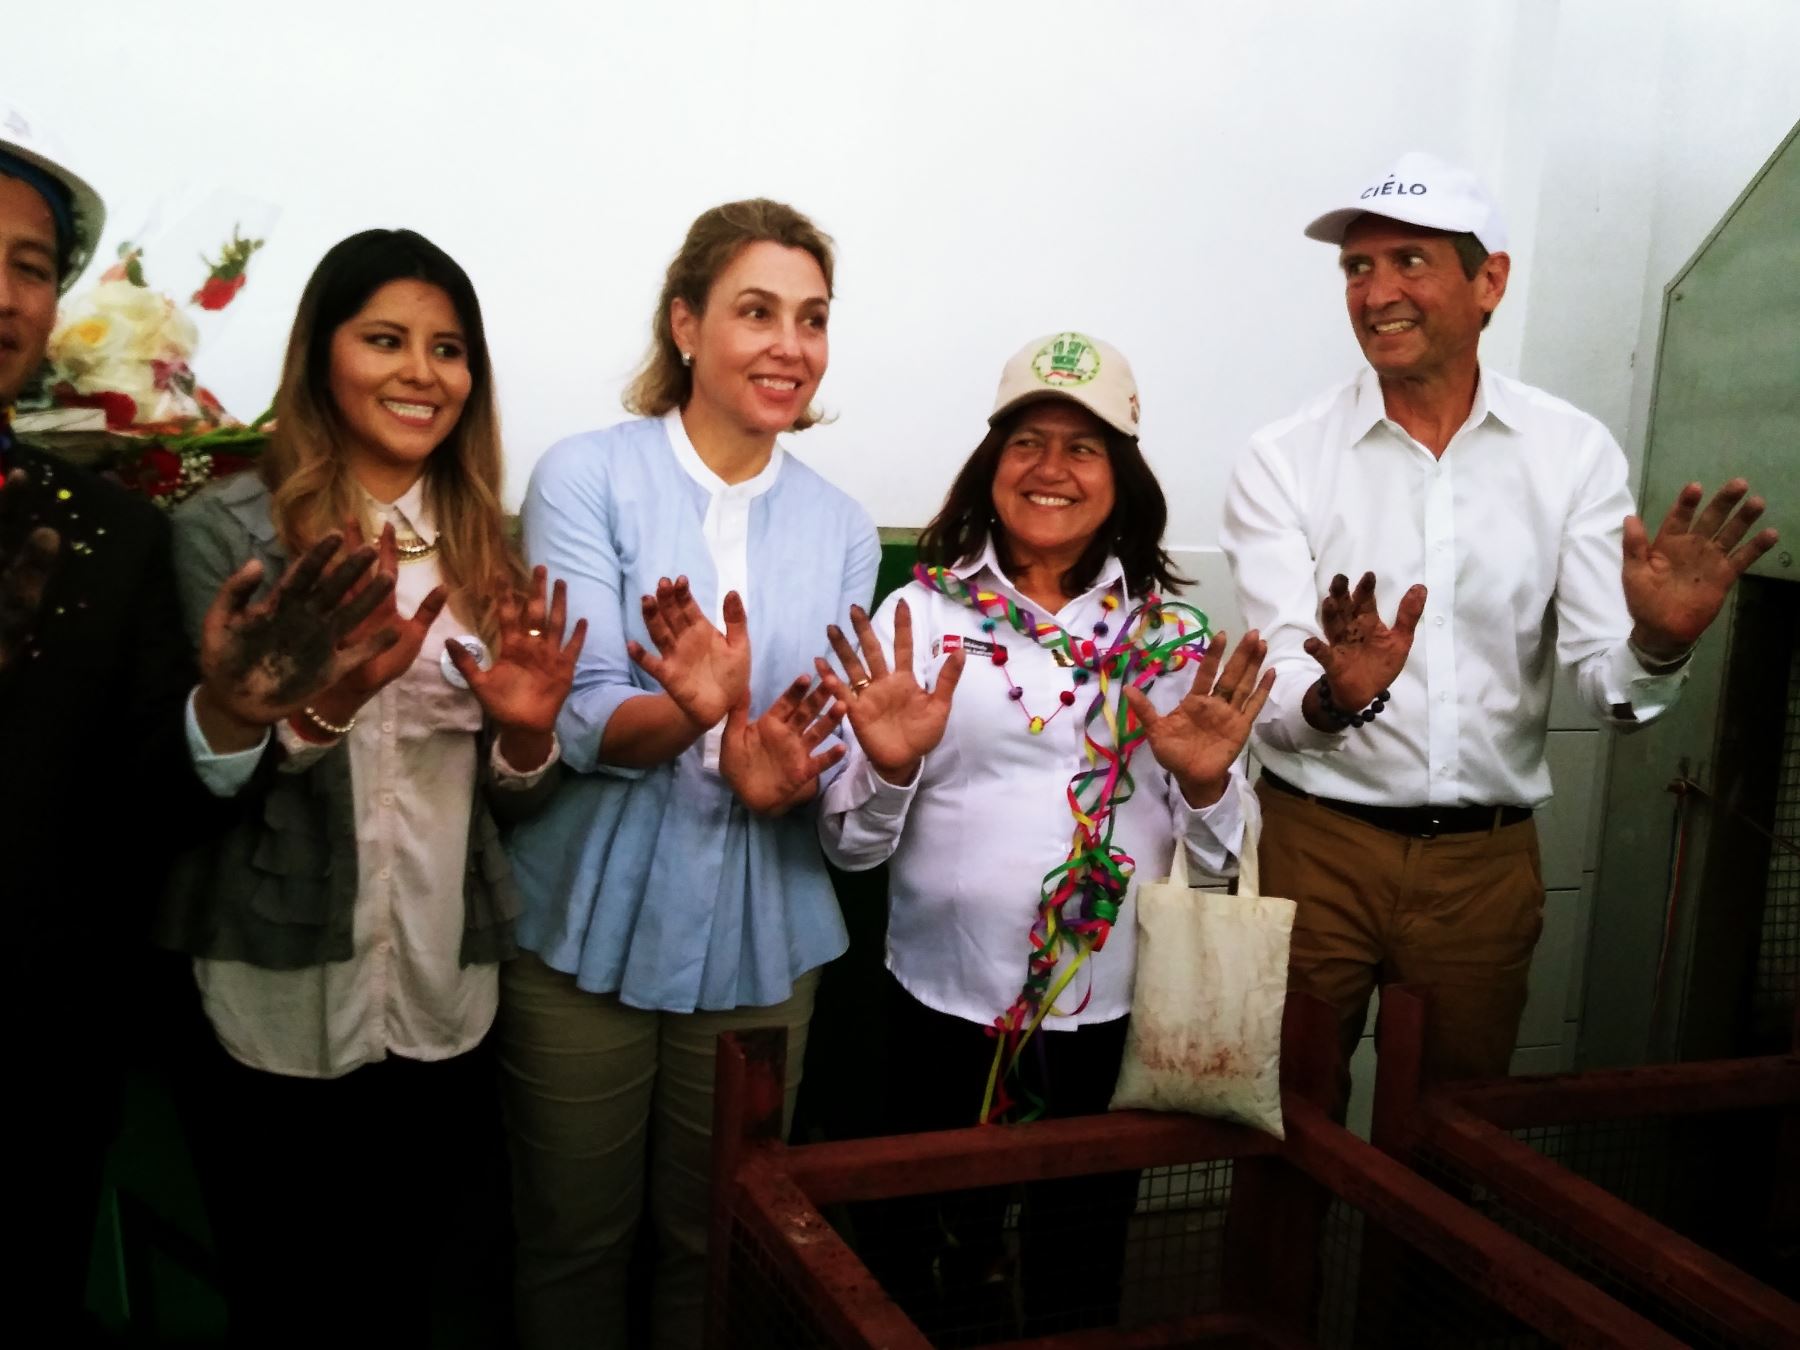 Viceministra del Ambiente, Albina Ruíz, junto a otras autoridades y representantes de empresas privadas, inauguro hoy la Planta de Valorización de Residuos Orgánicos en el distrito de Machu Picchu Pueblo, que se convierte en la localidad 100% sostenible del Perú y America Latina. Foto: Luis Zuta Dávila